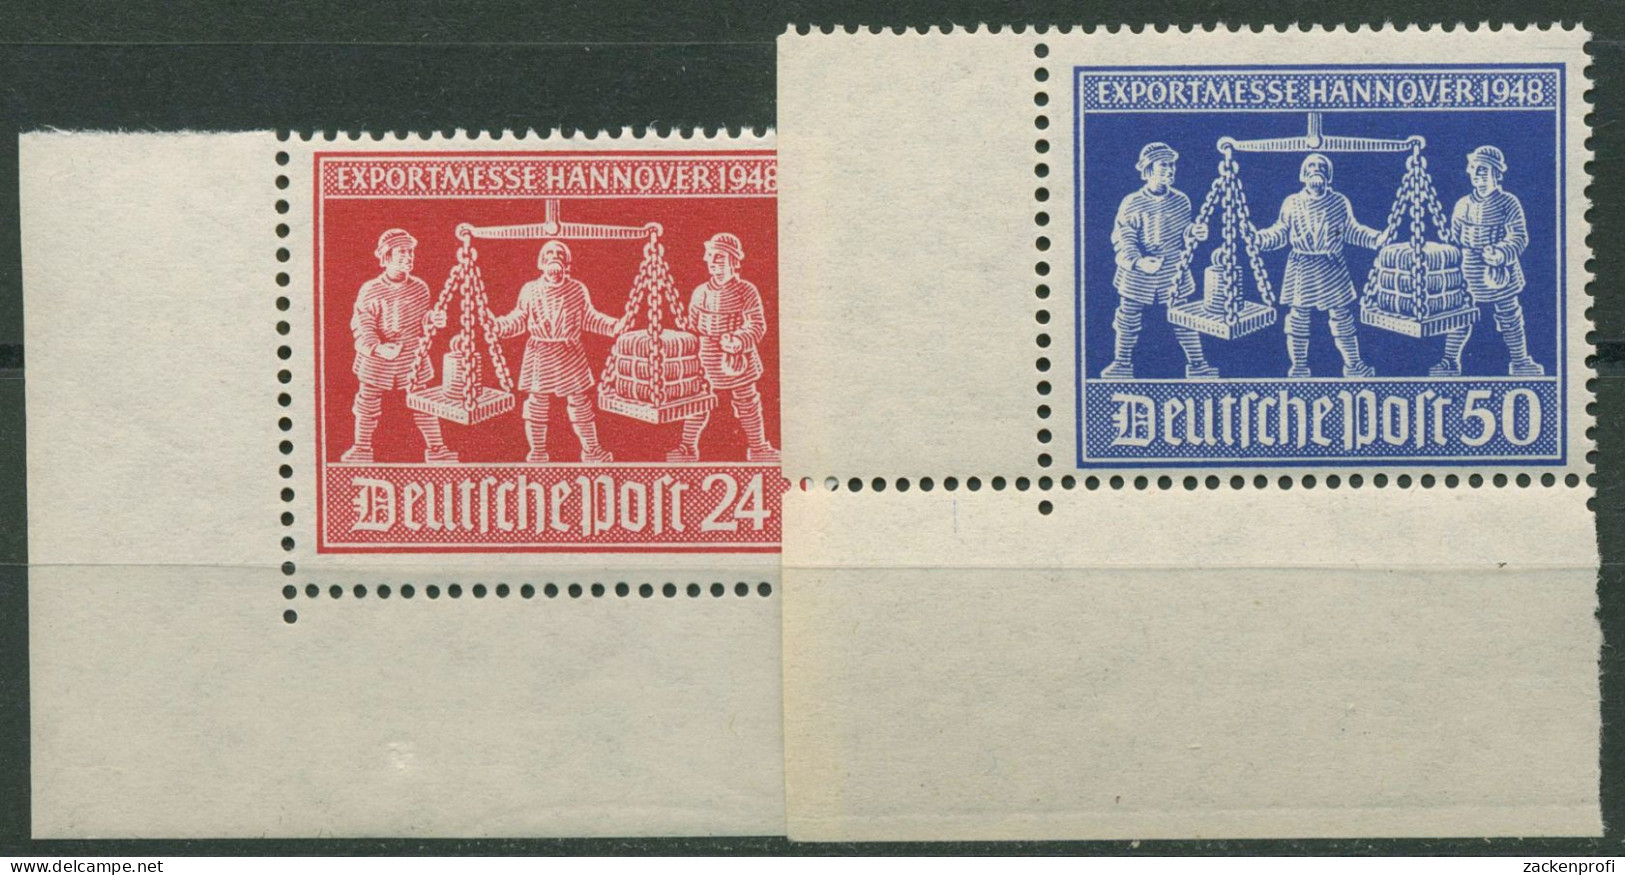 Alliierte Besetzung 1948 Exportmesse Hannover 969/70 Ecke 3 Postfrisch - Mint